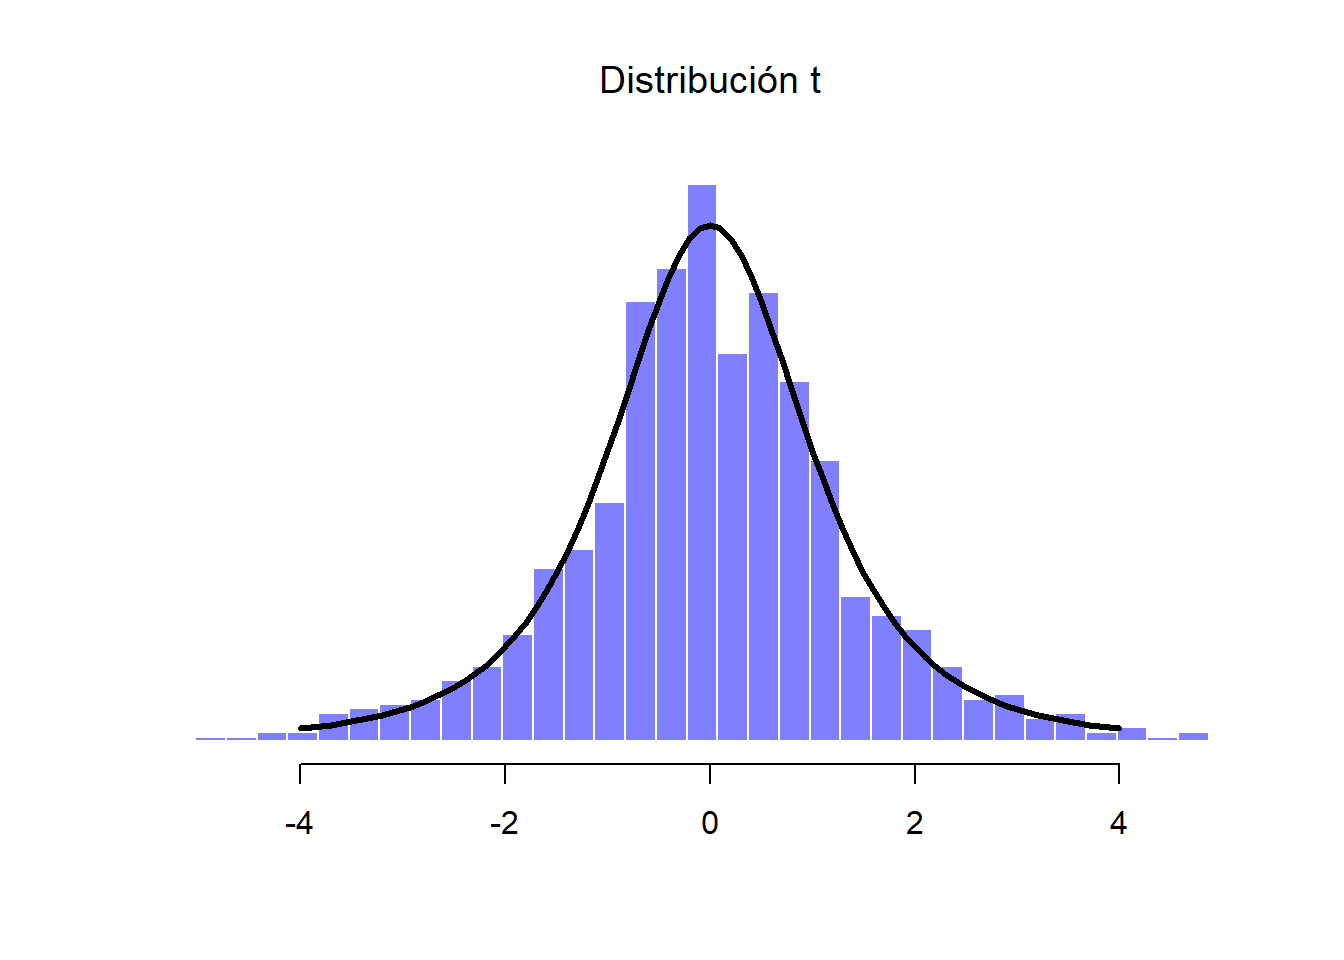 Distribución t. Es el resultado de dividir una distribución normal (en este caso la Muestra D) entre una variable chi-cuadrada escalada